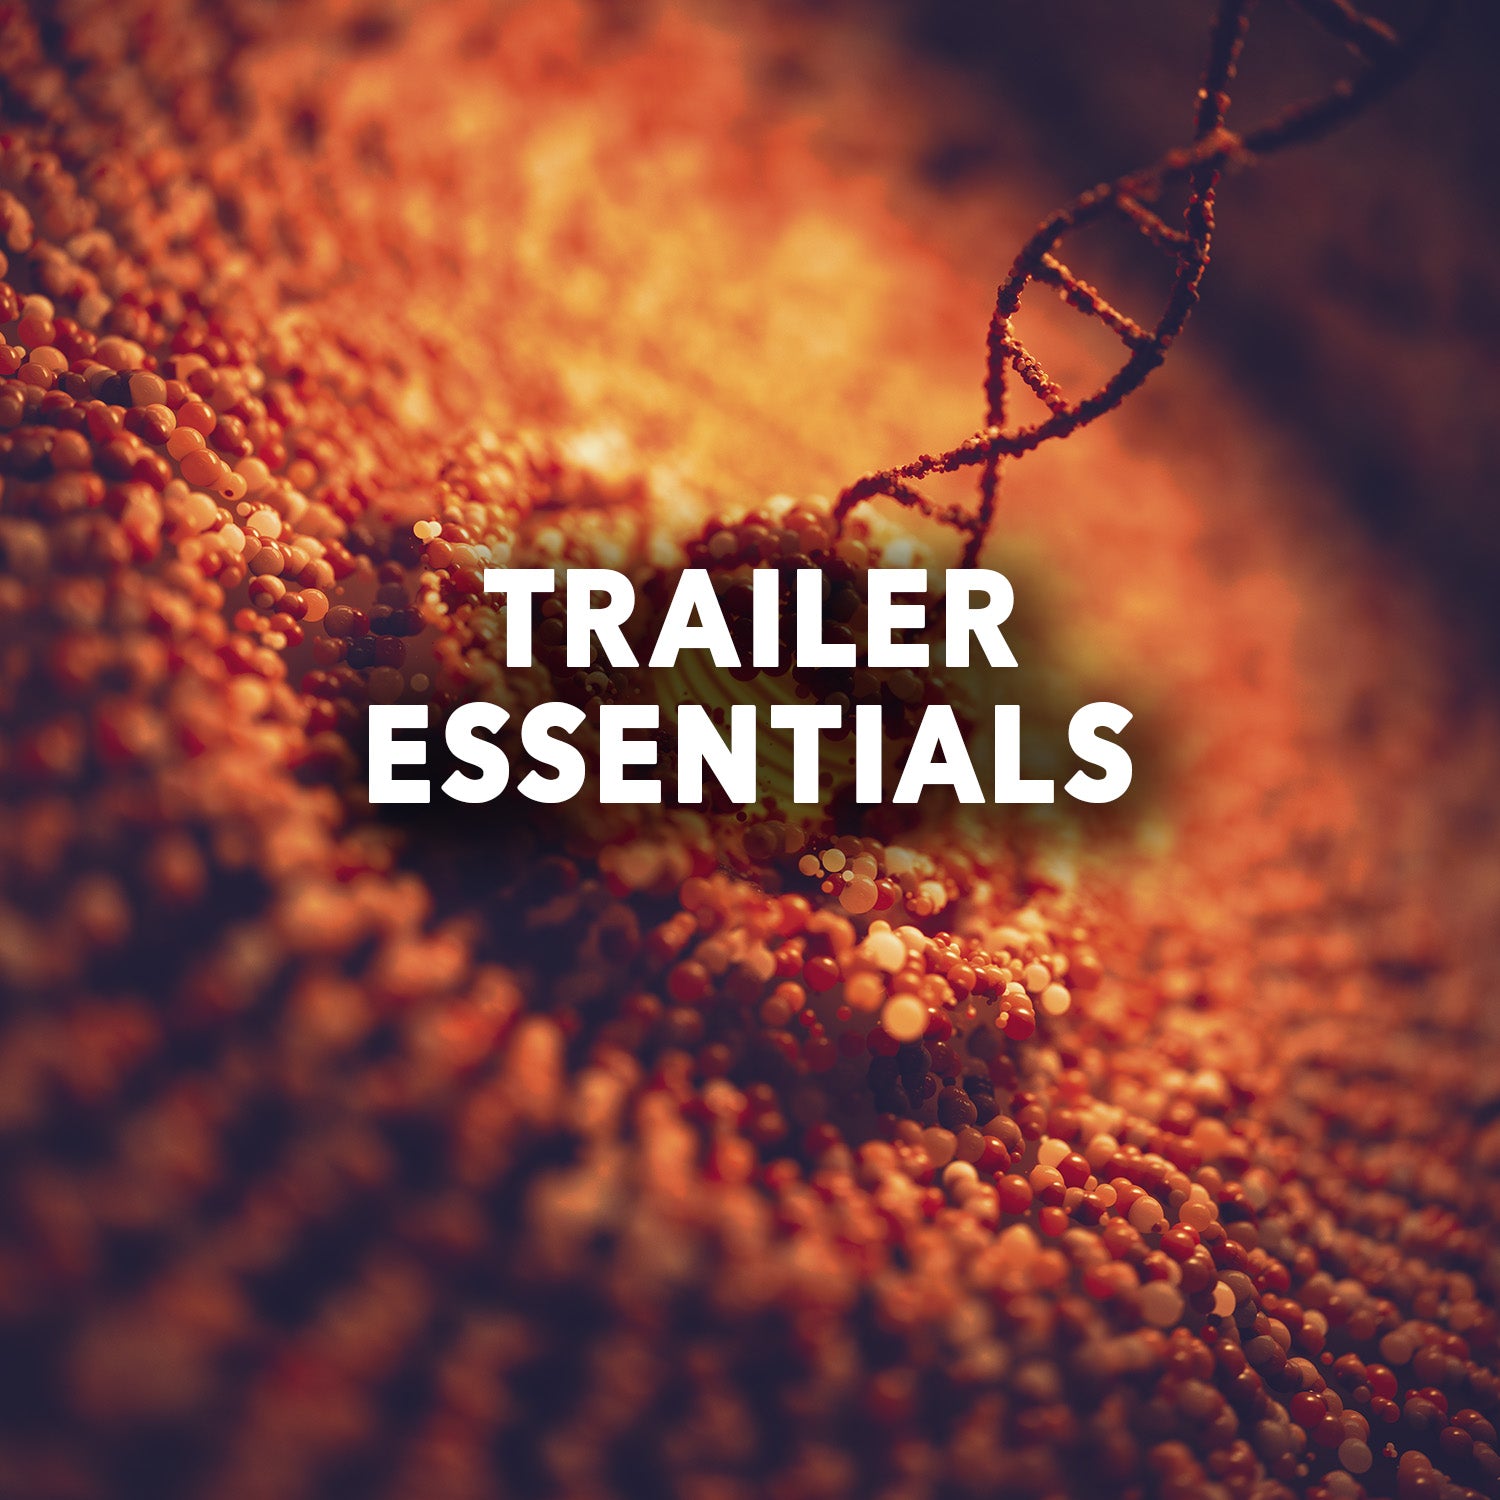 TRAILER ESSENTIALS | Trailer Sound Effects